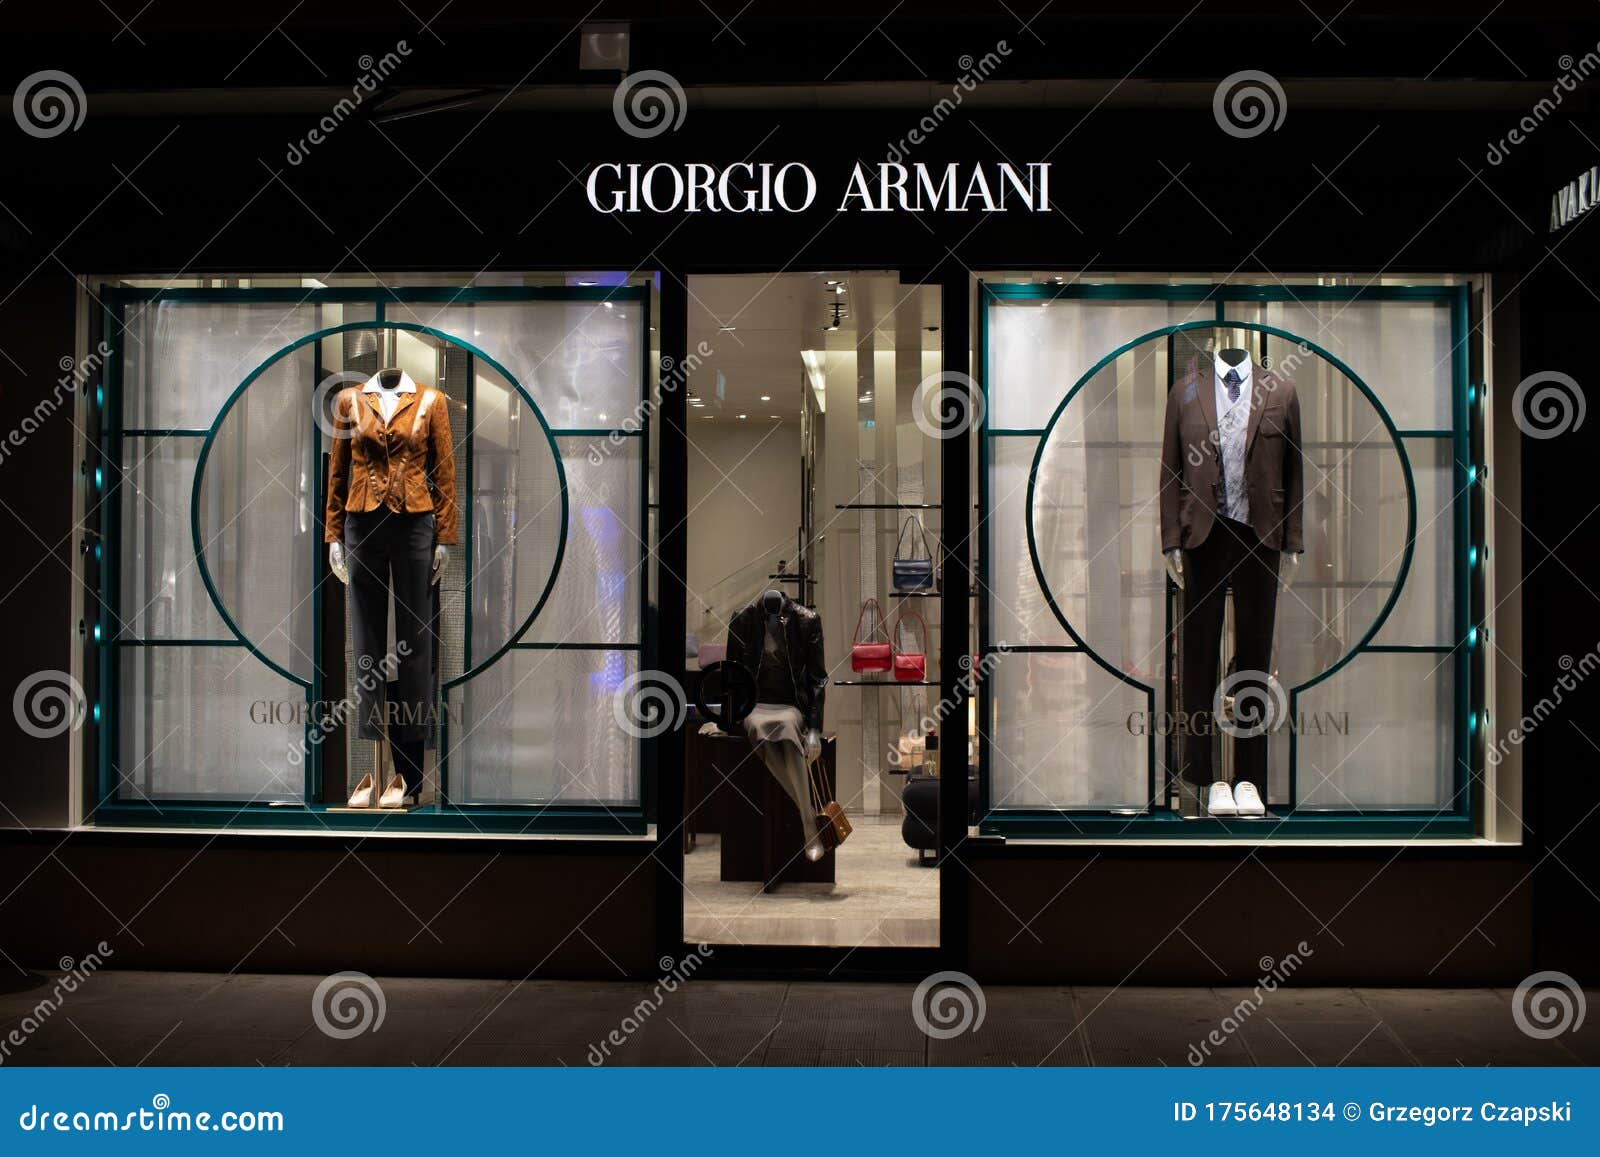 armani fashion house